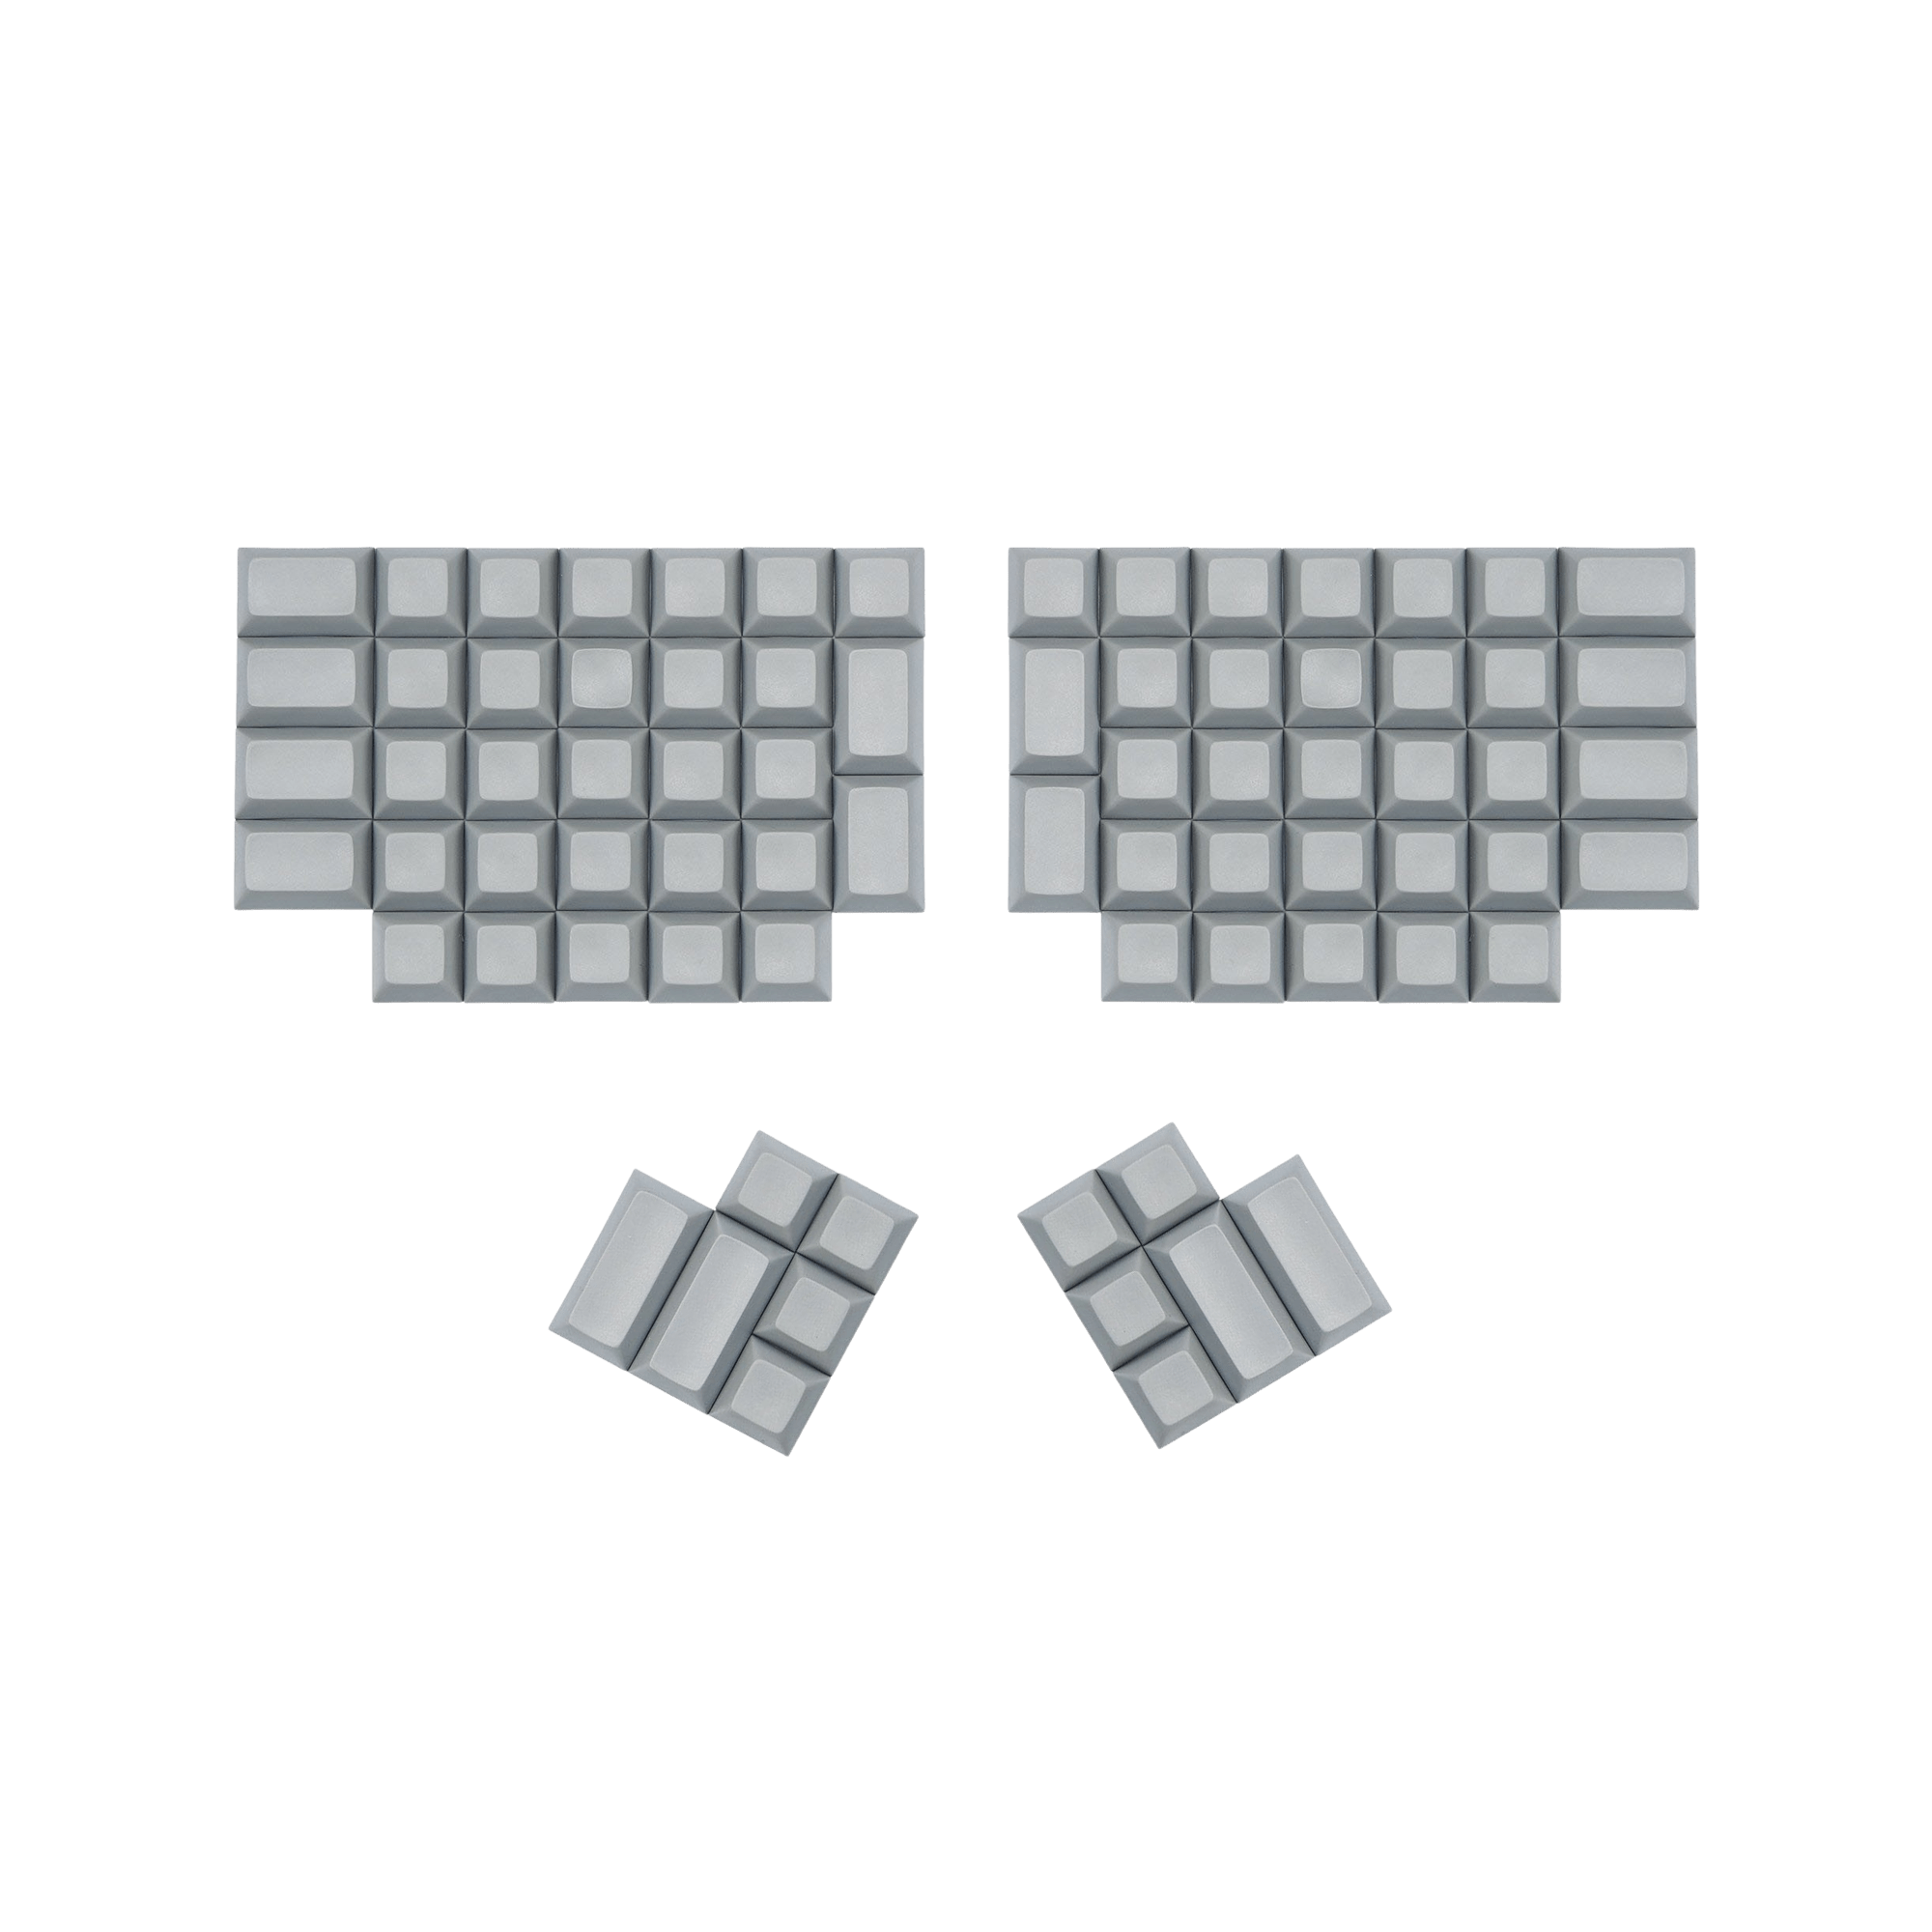 Split Keyboard DSA Blank Keycaps - Mechboards